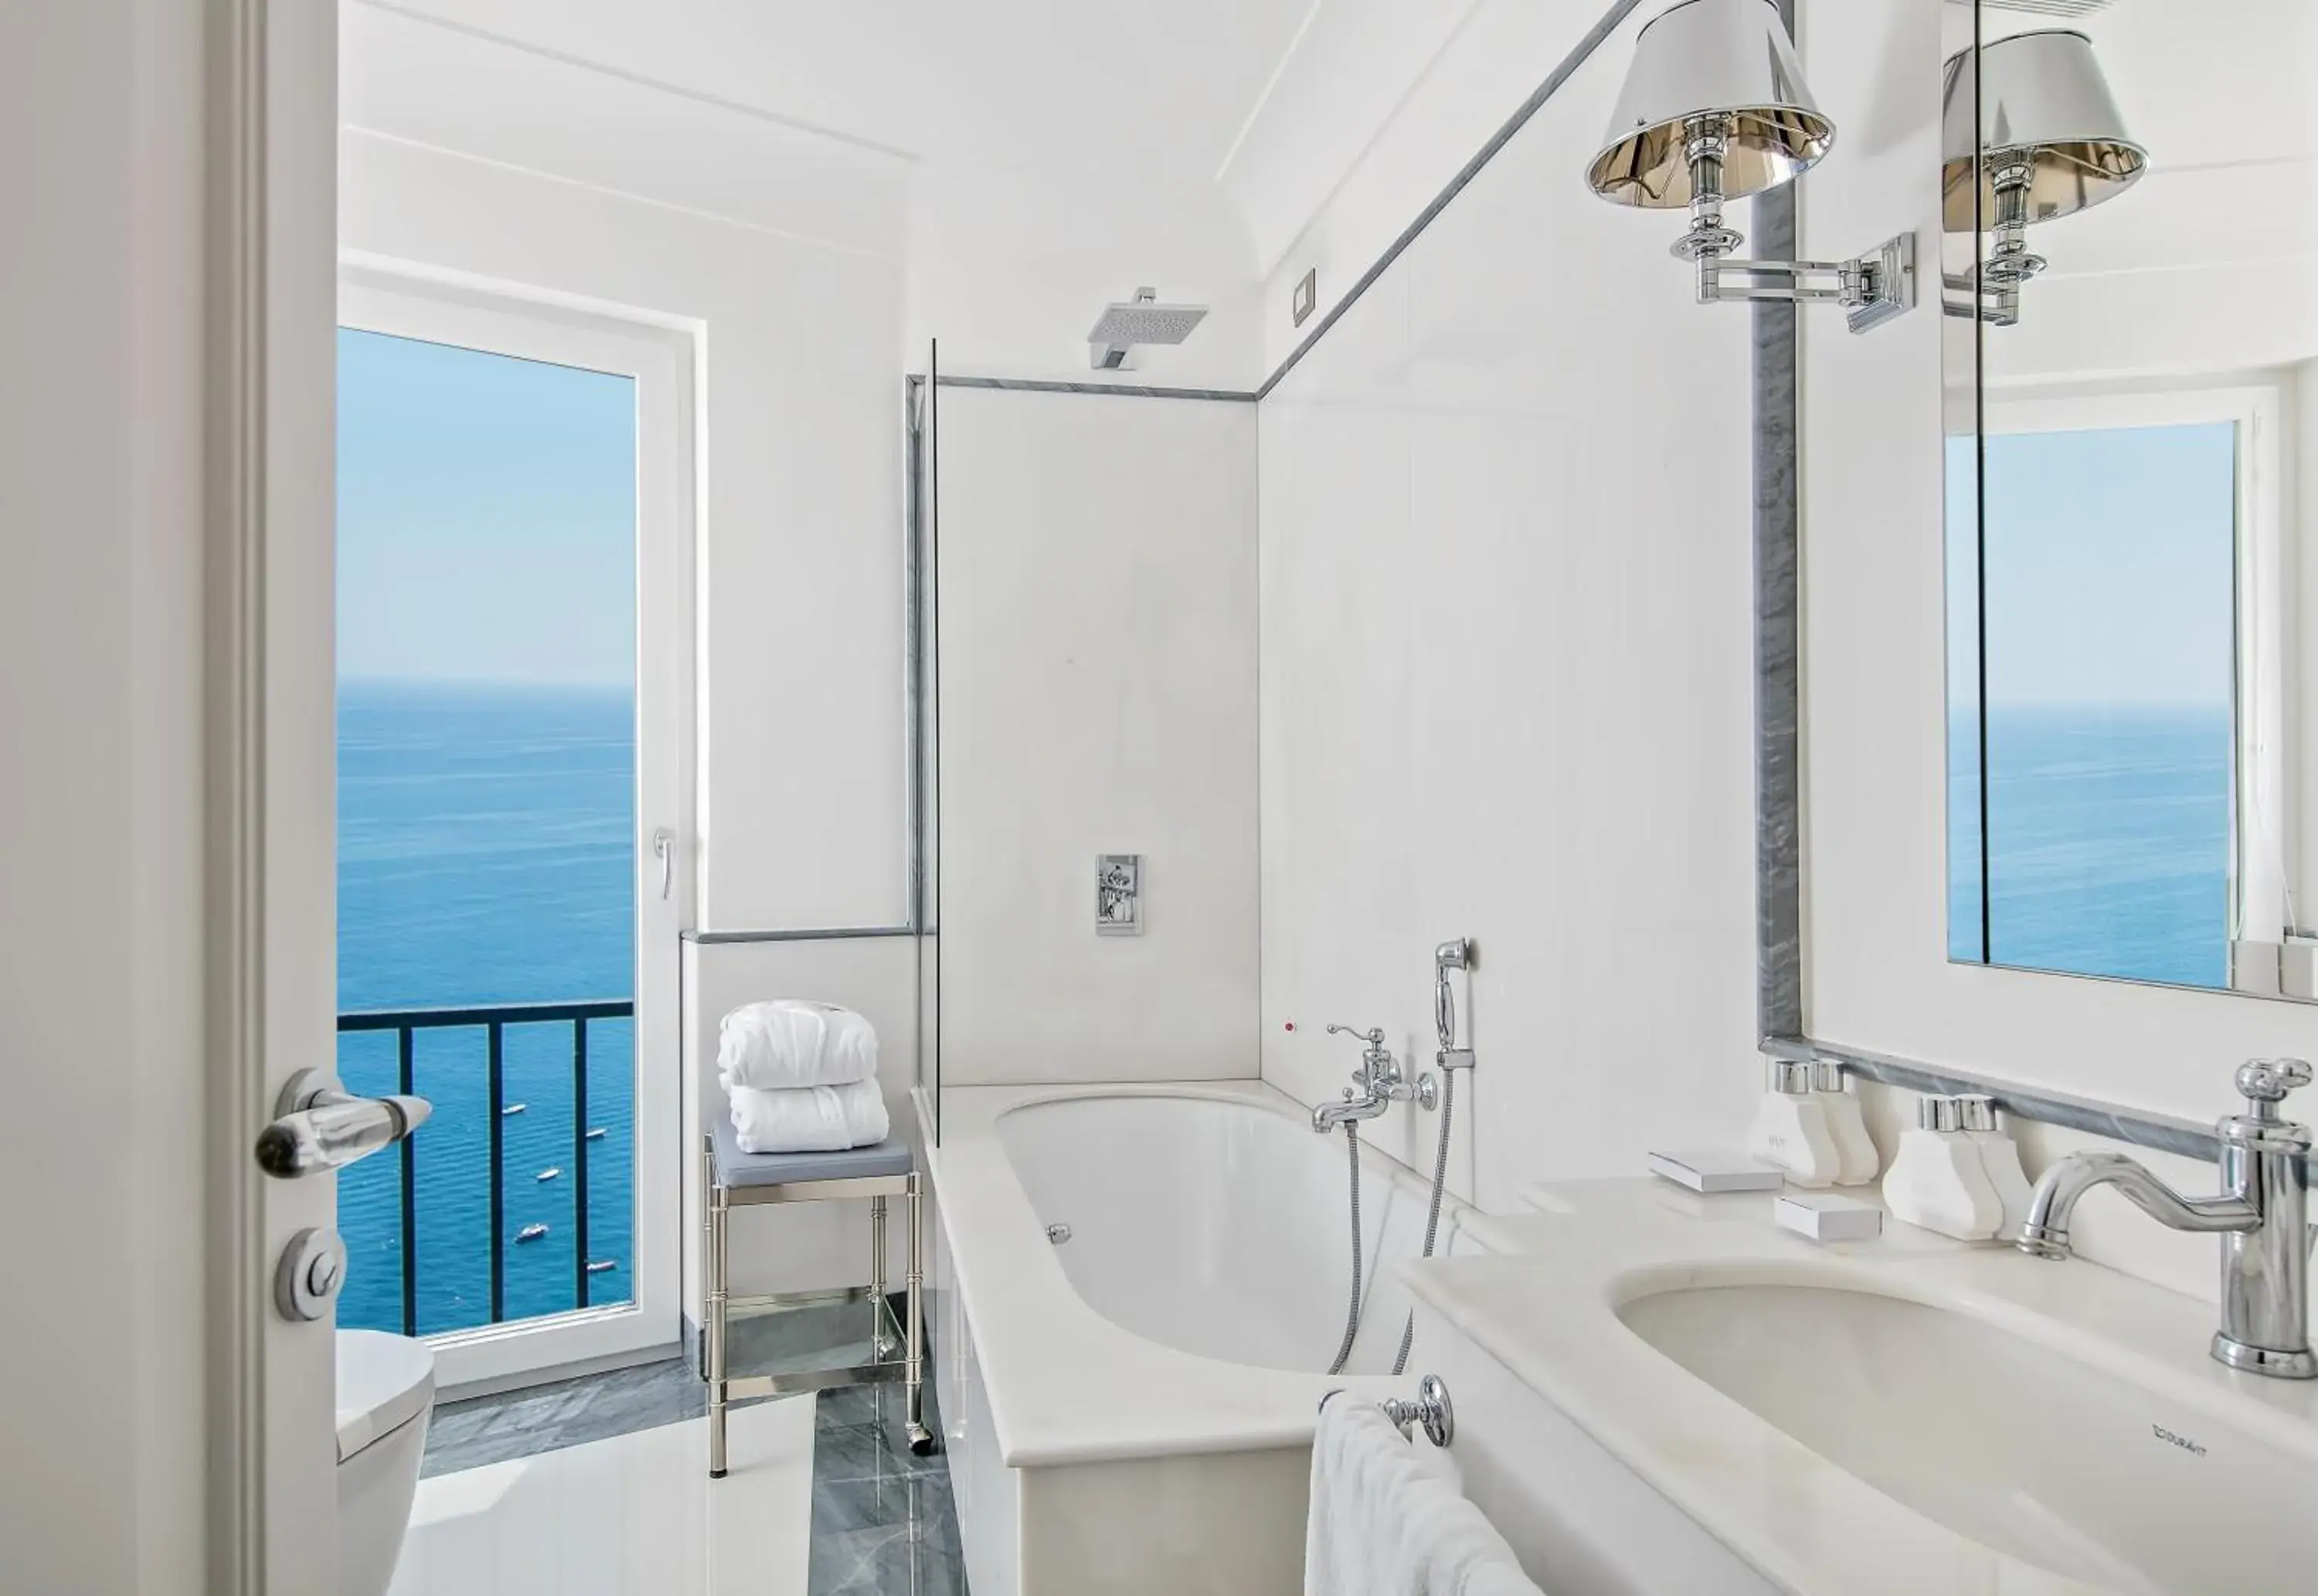 Day, Bathroom in Hotel Villa Franca